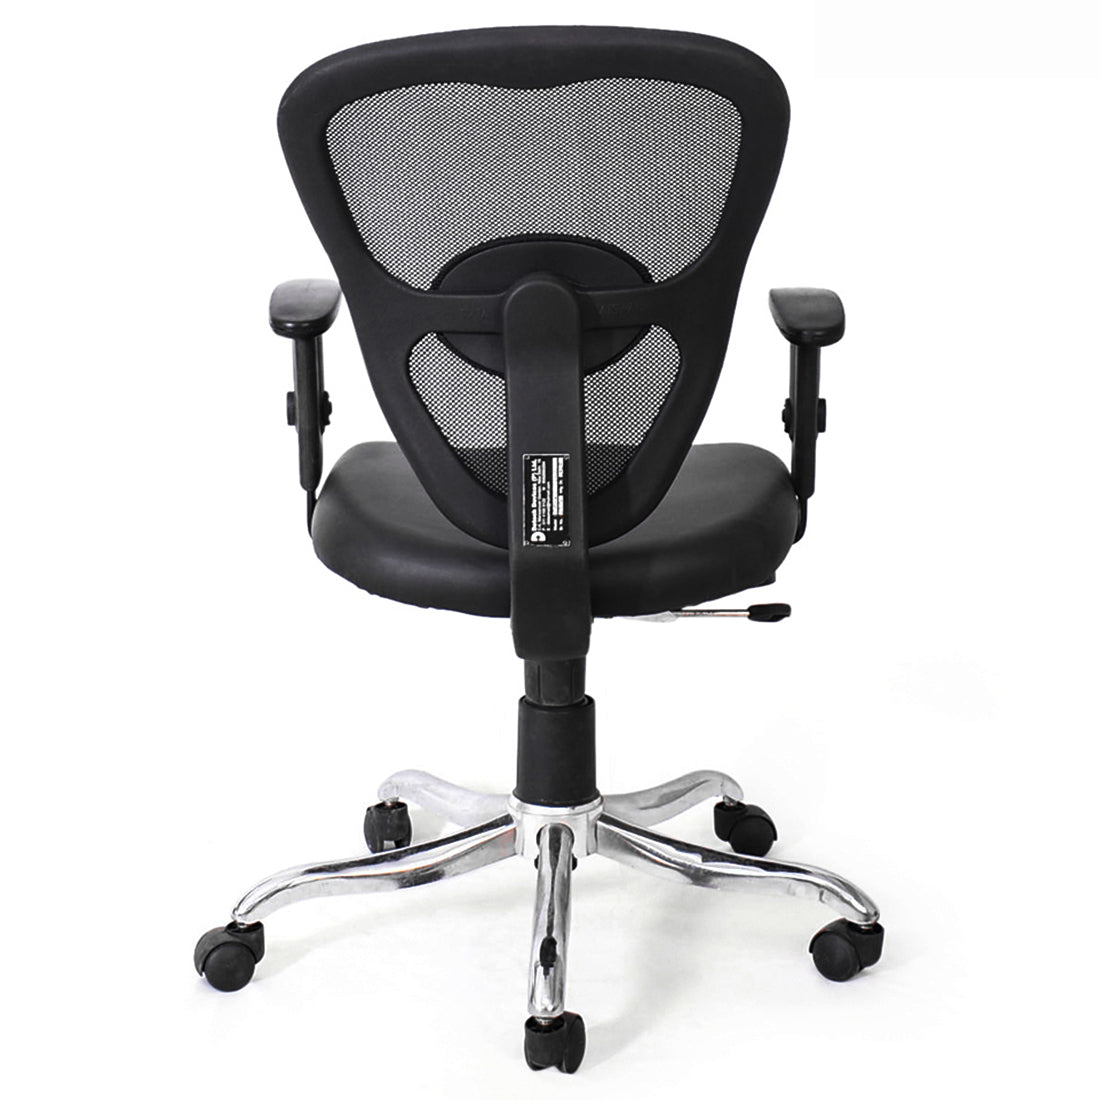 Ergonomic Desk Chair Adjustable Revolving Chair - Black Pack of 2